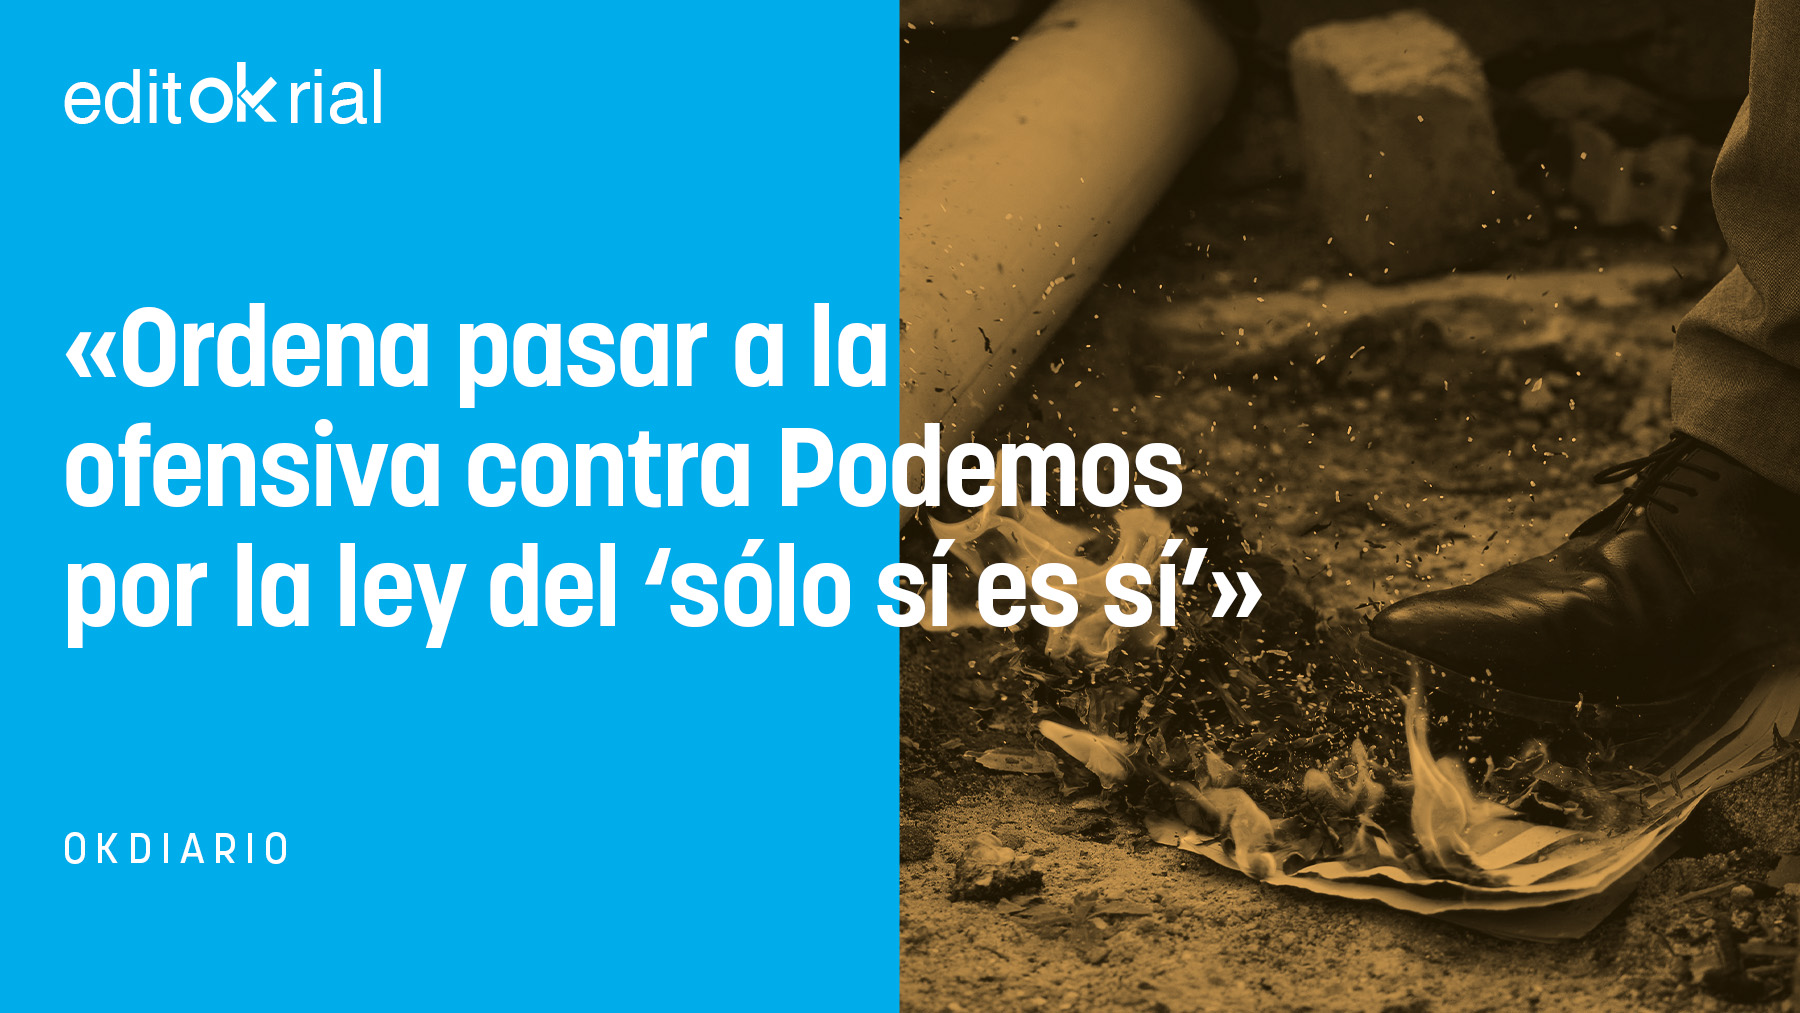 Pedro Sánchez, el bombero pirómano: ahora quiere apagar el fuego de la ley que él provocó